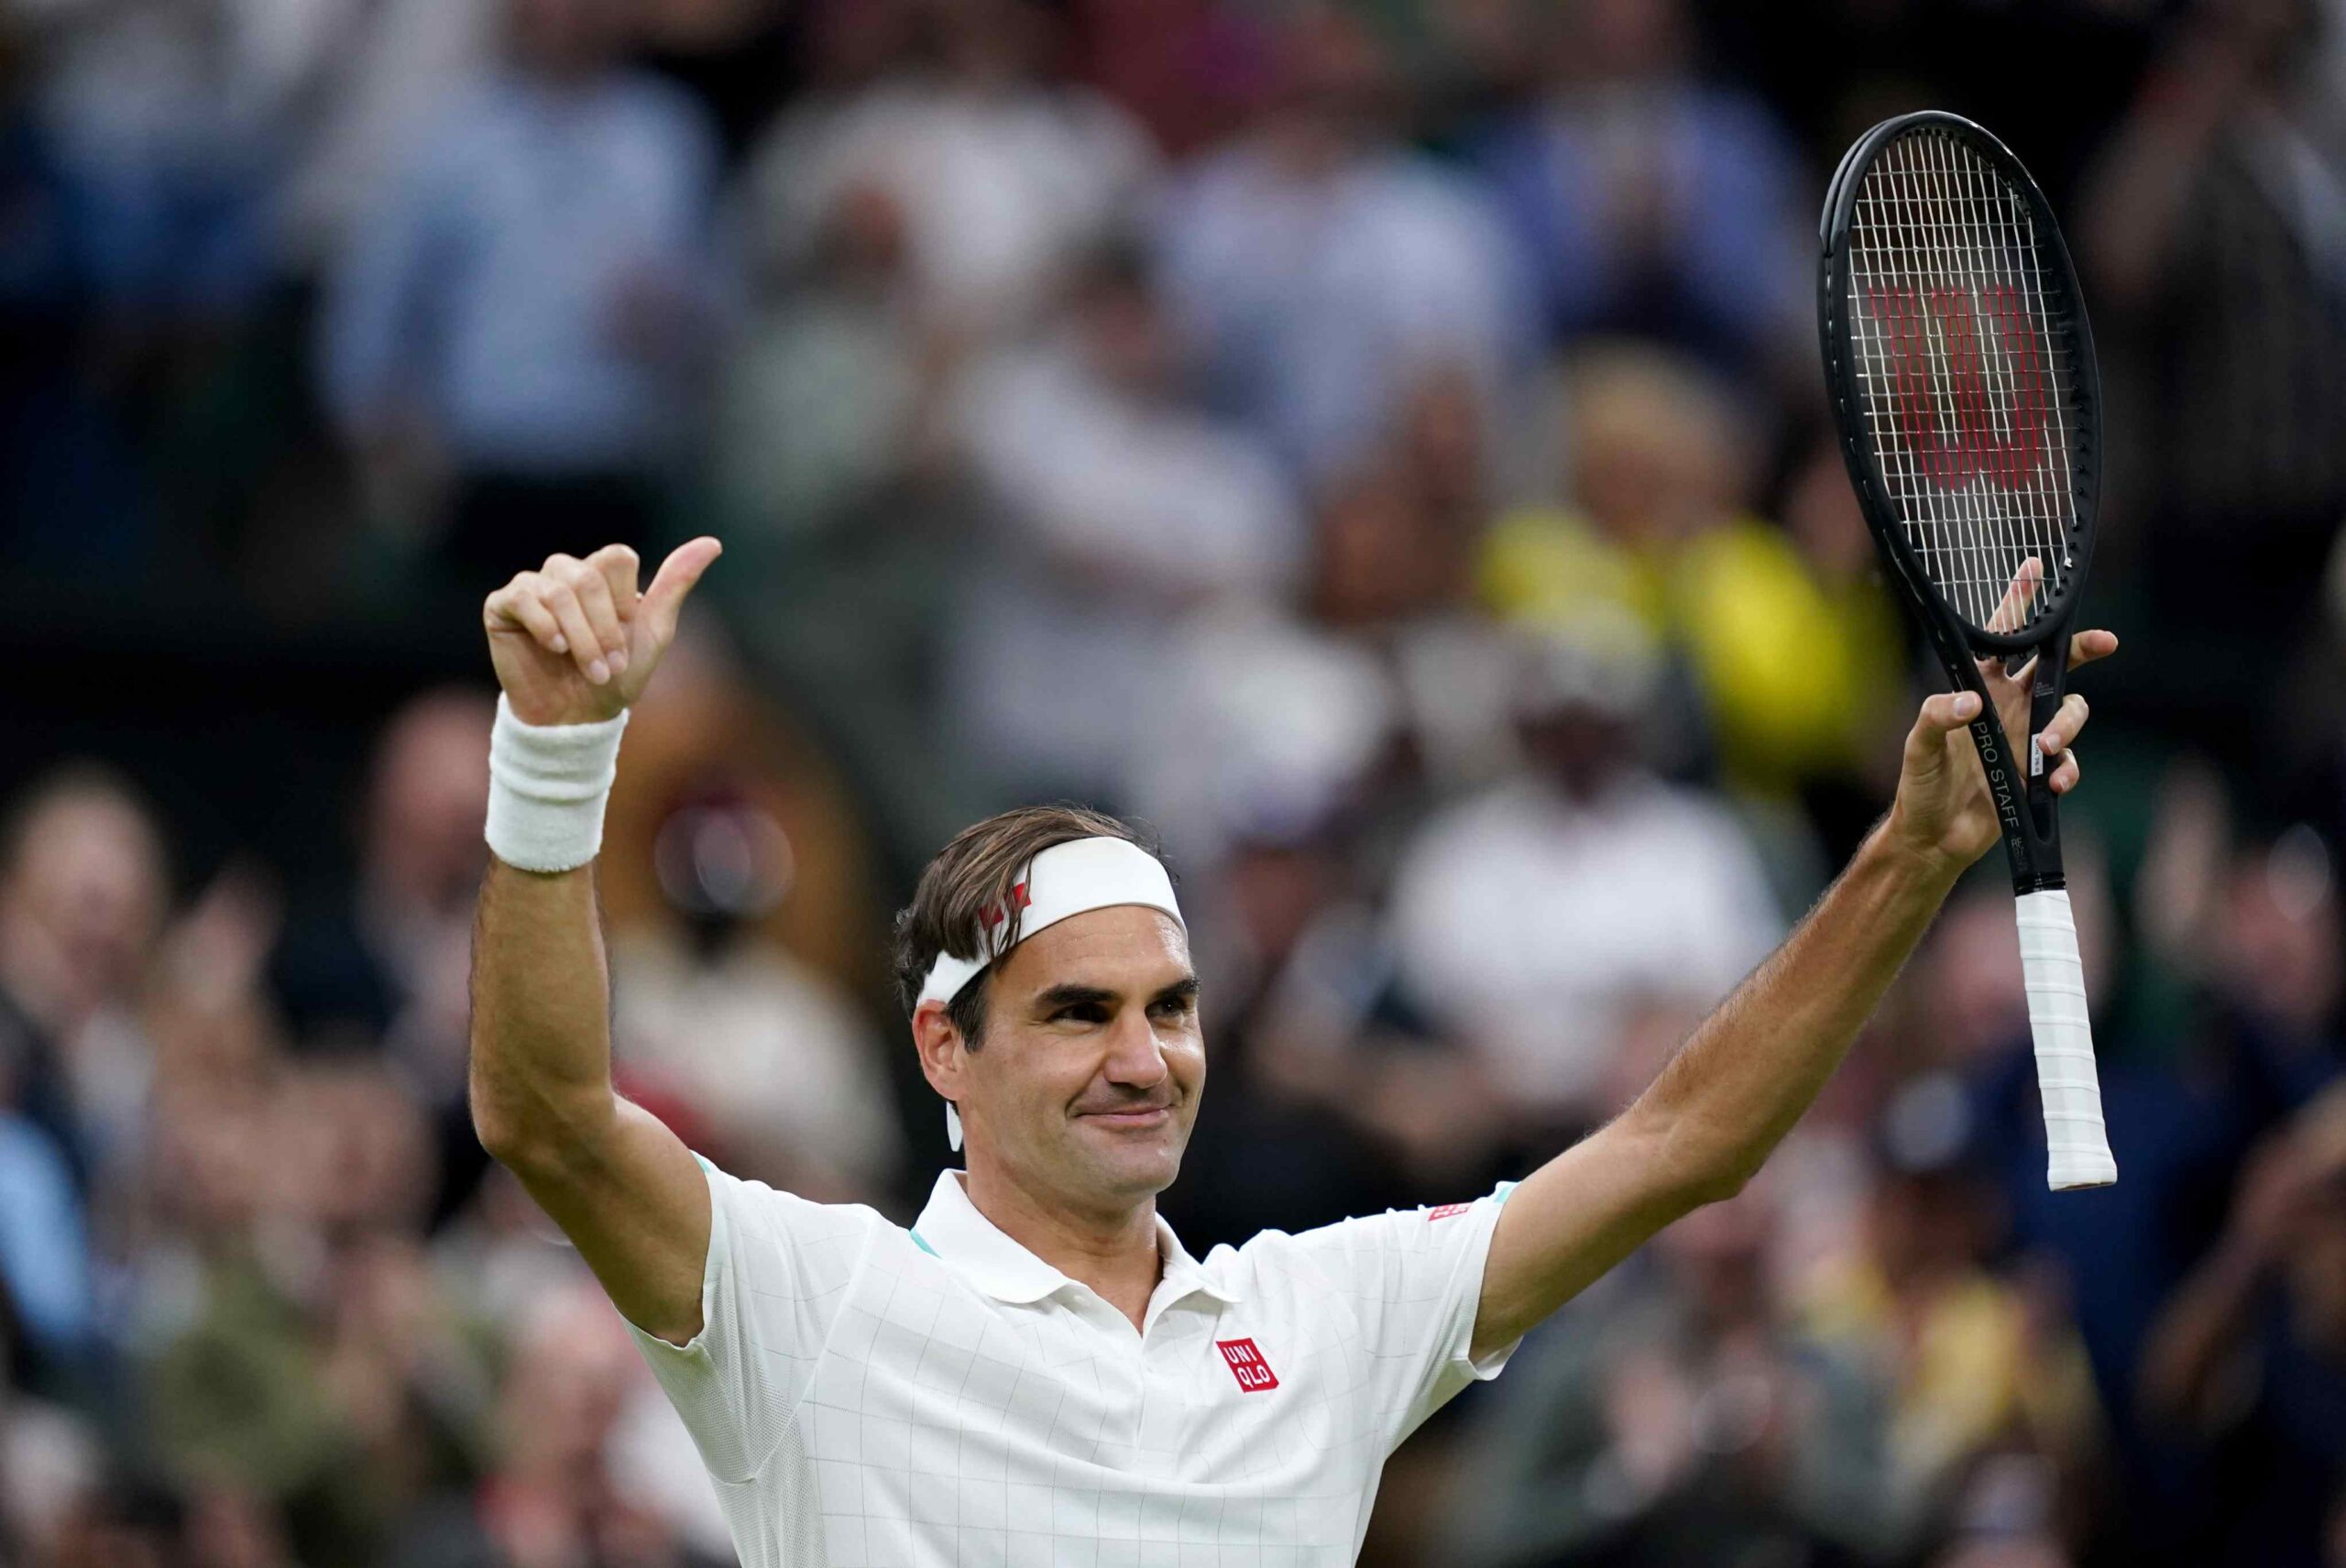 Raqueta Tenis Wilson Federer Adulto Encordada